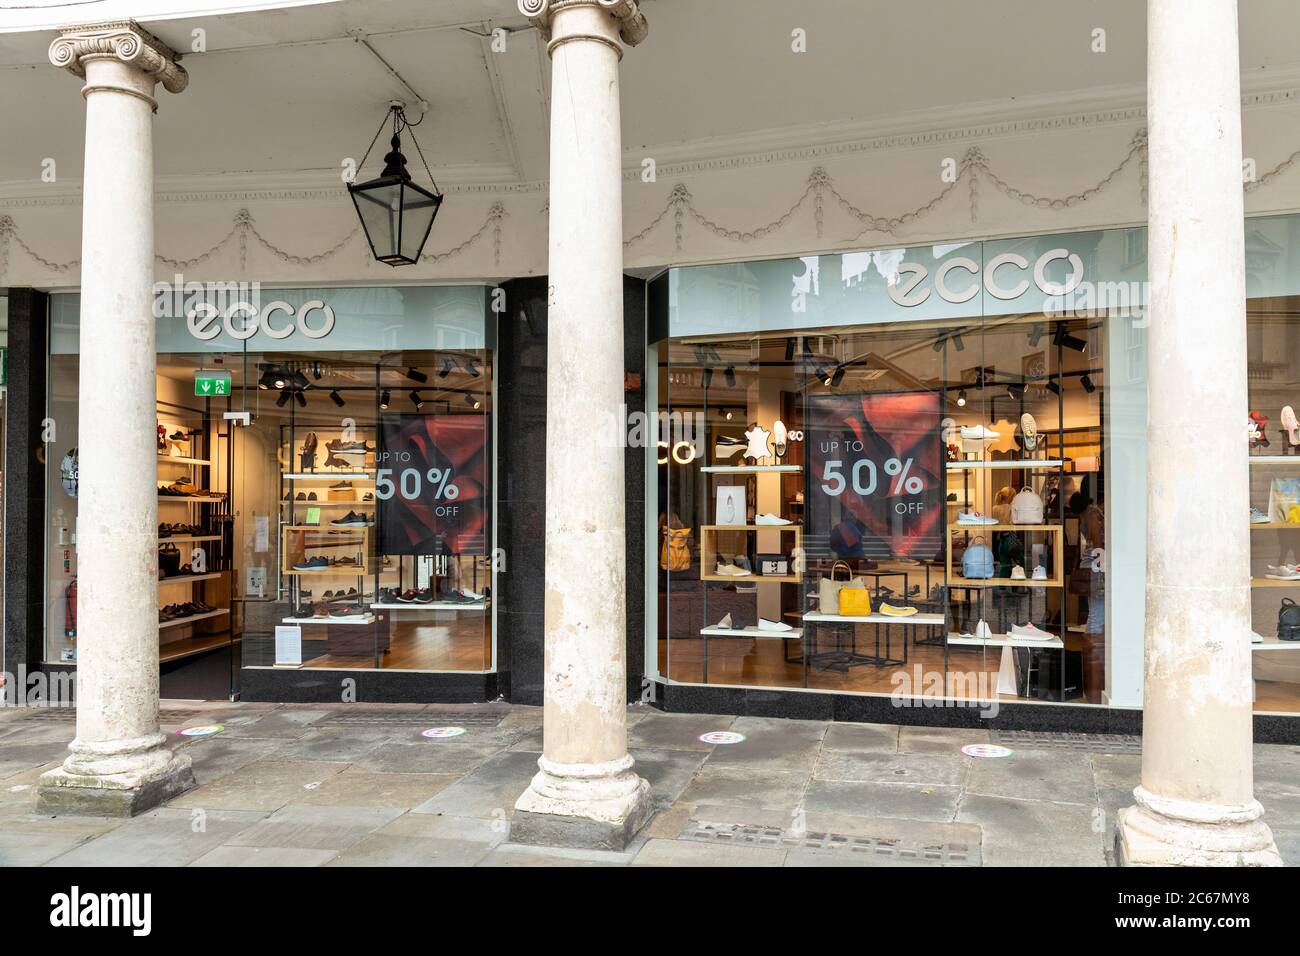 Verkauf mit 50% Rabatt bei Ecco Schuhe ein Schuhgeschäft in Bath Street,  Bath, England, UK Stockfotografie - Alamy